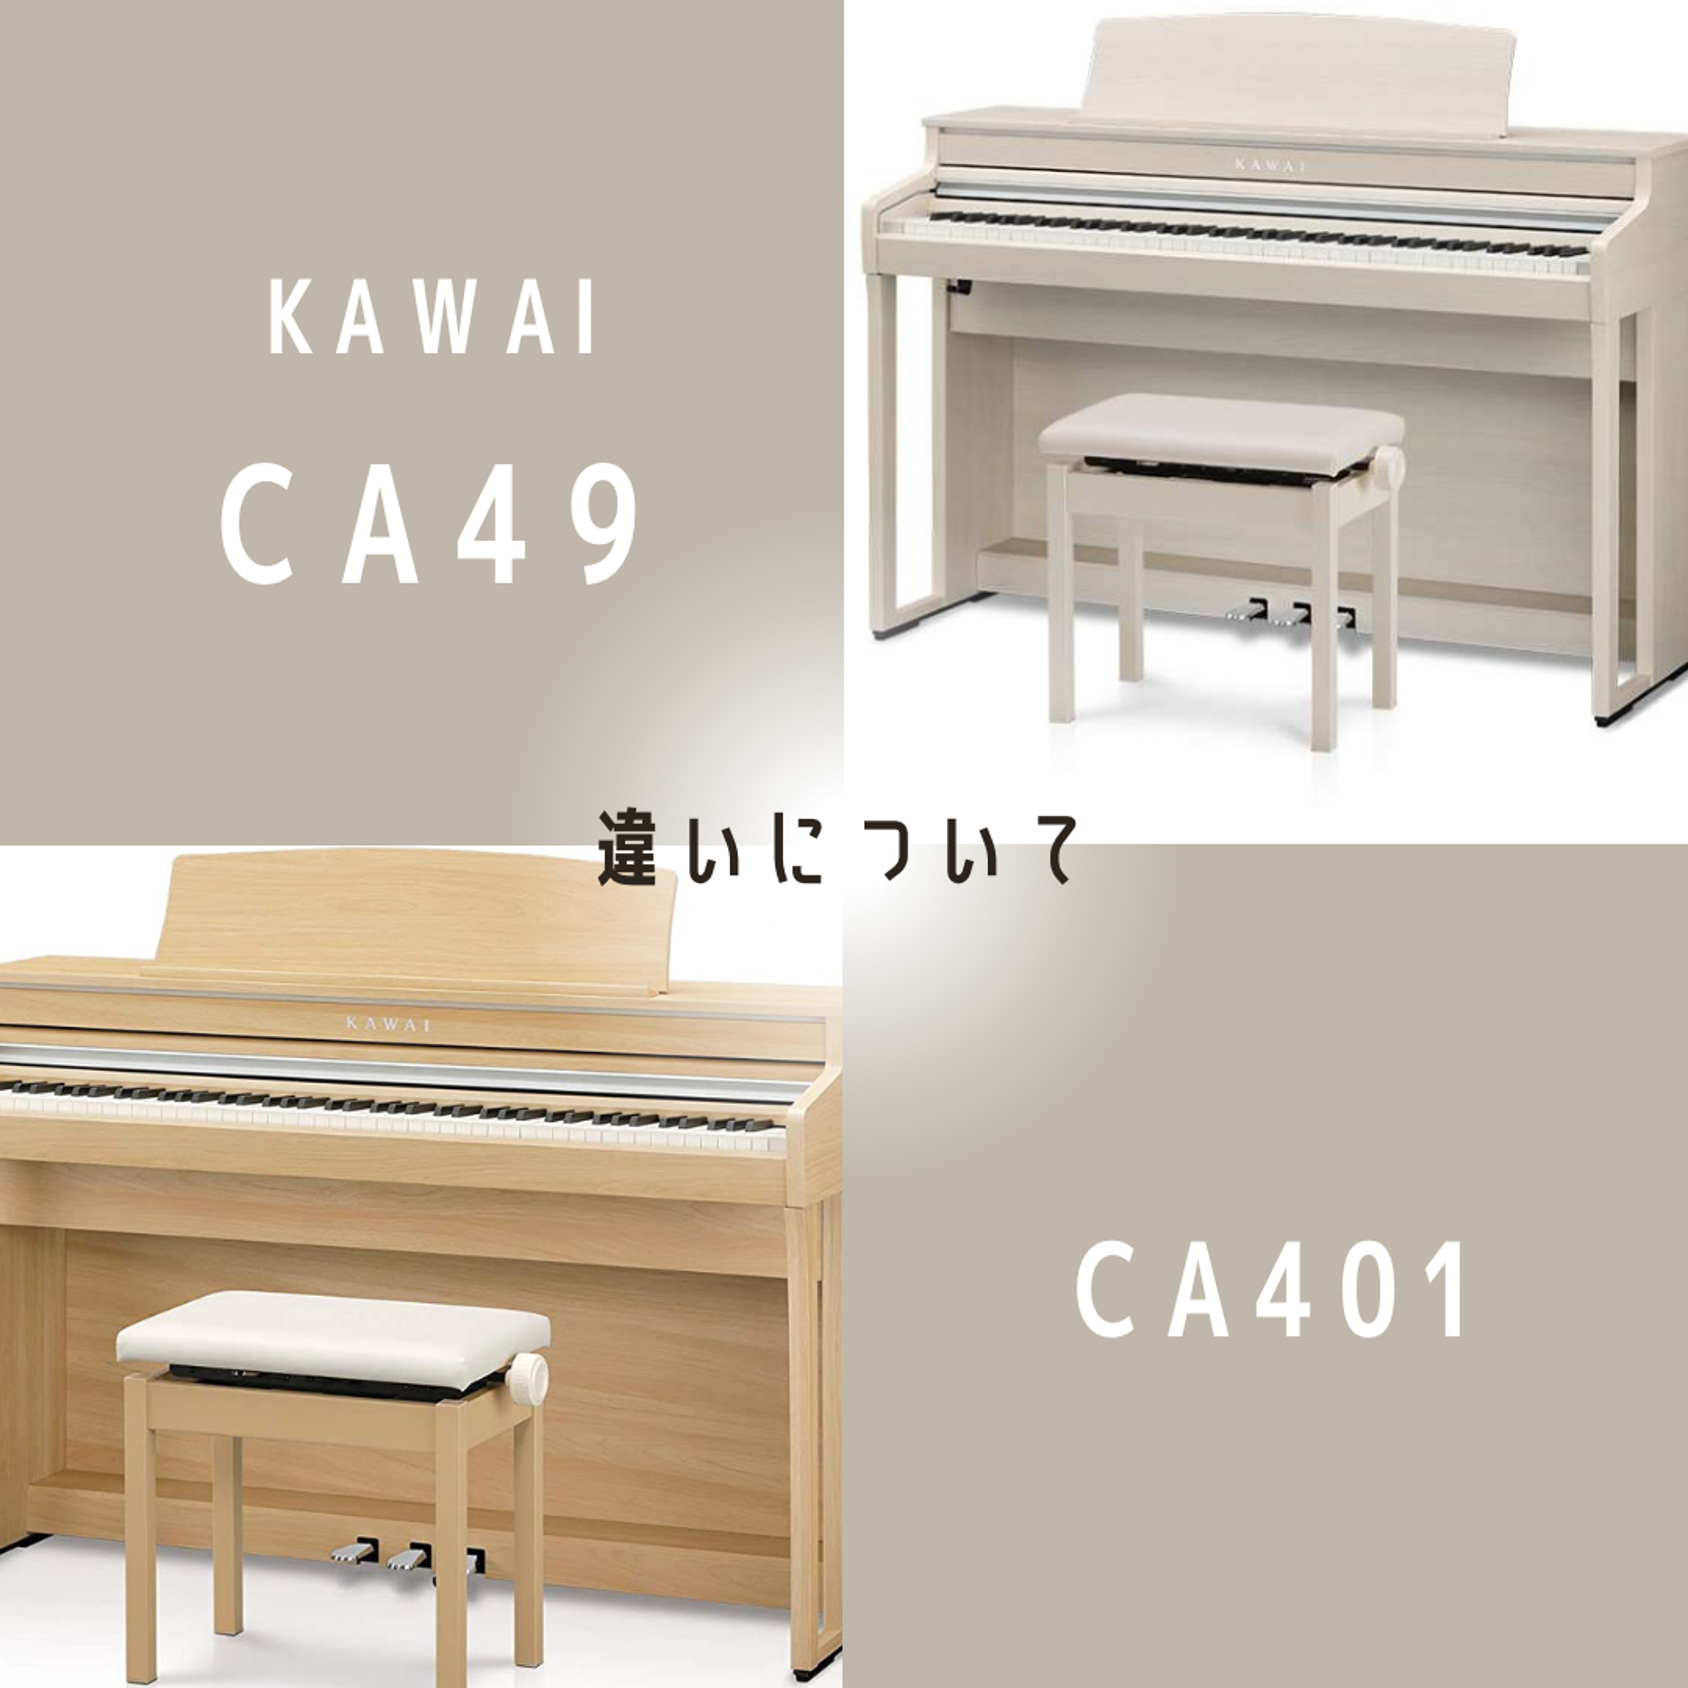 KAWAIピアノ】CA49,CA401の違いについてご紹介いたします✨ - 電子